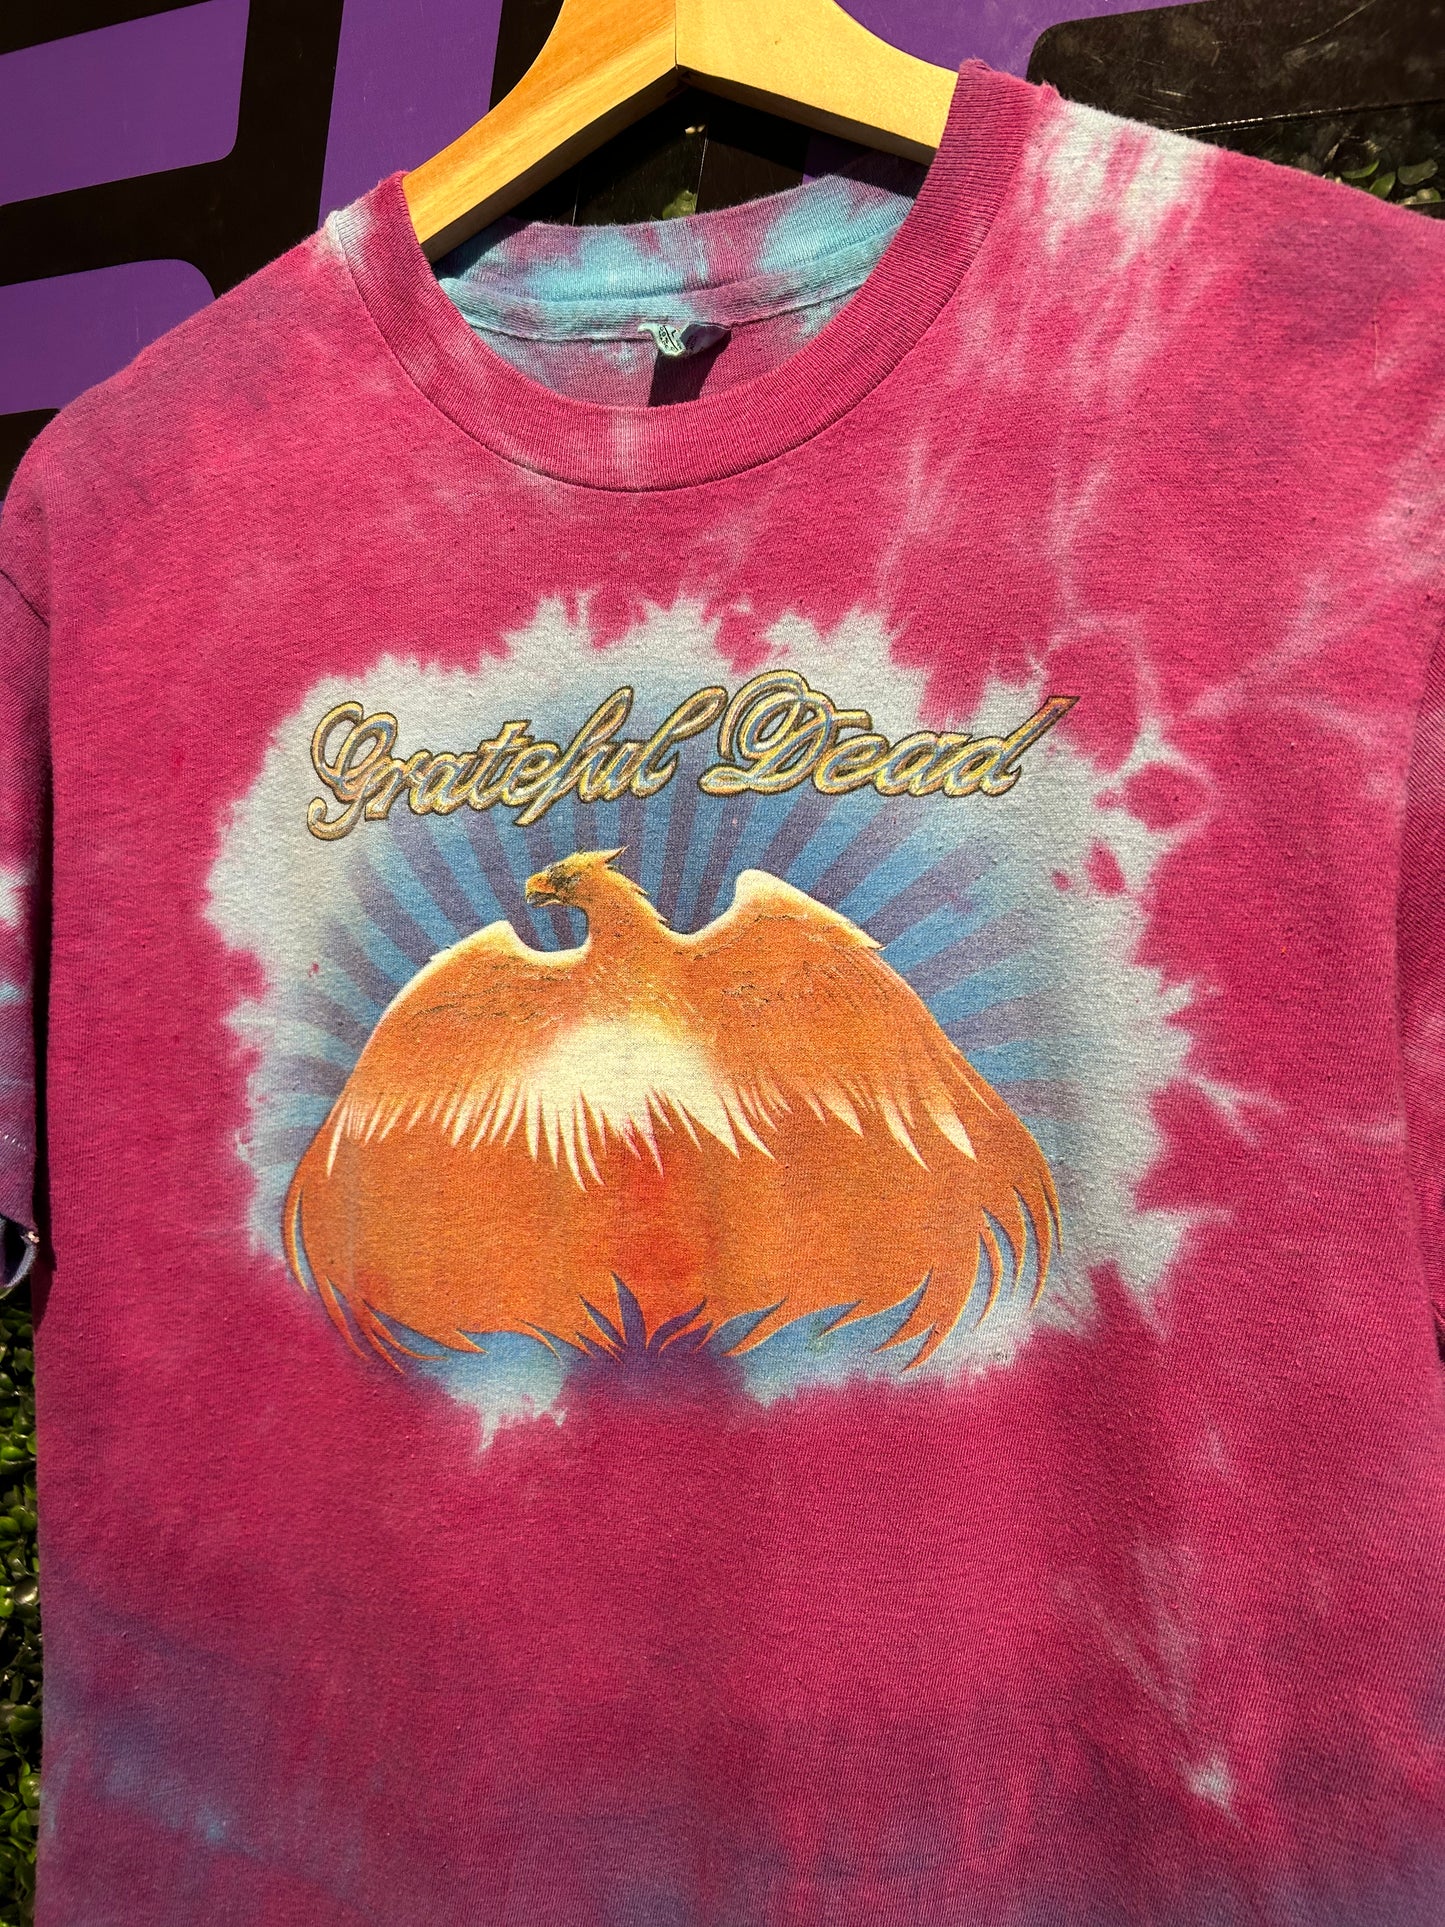 1980 Grateful Dead Go To Heaven T-Shirt. Size M/L